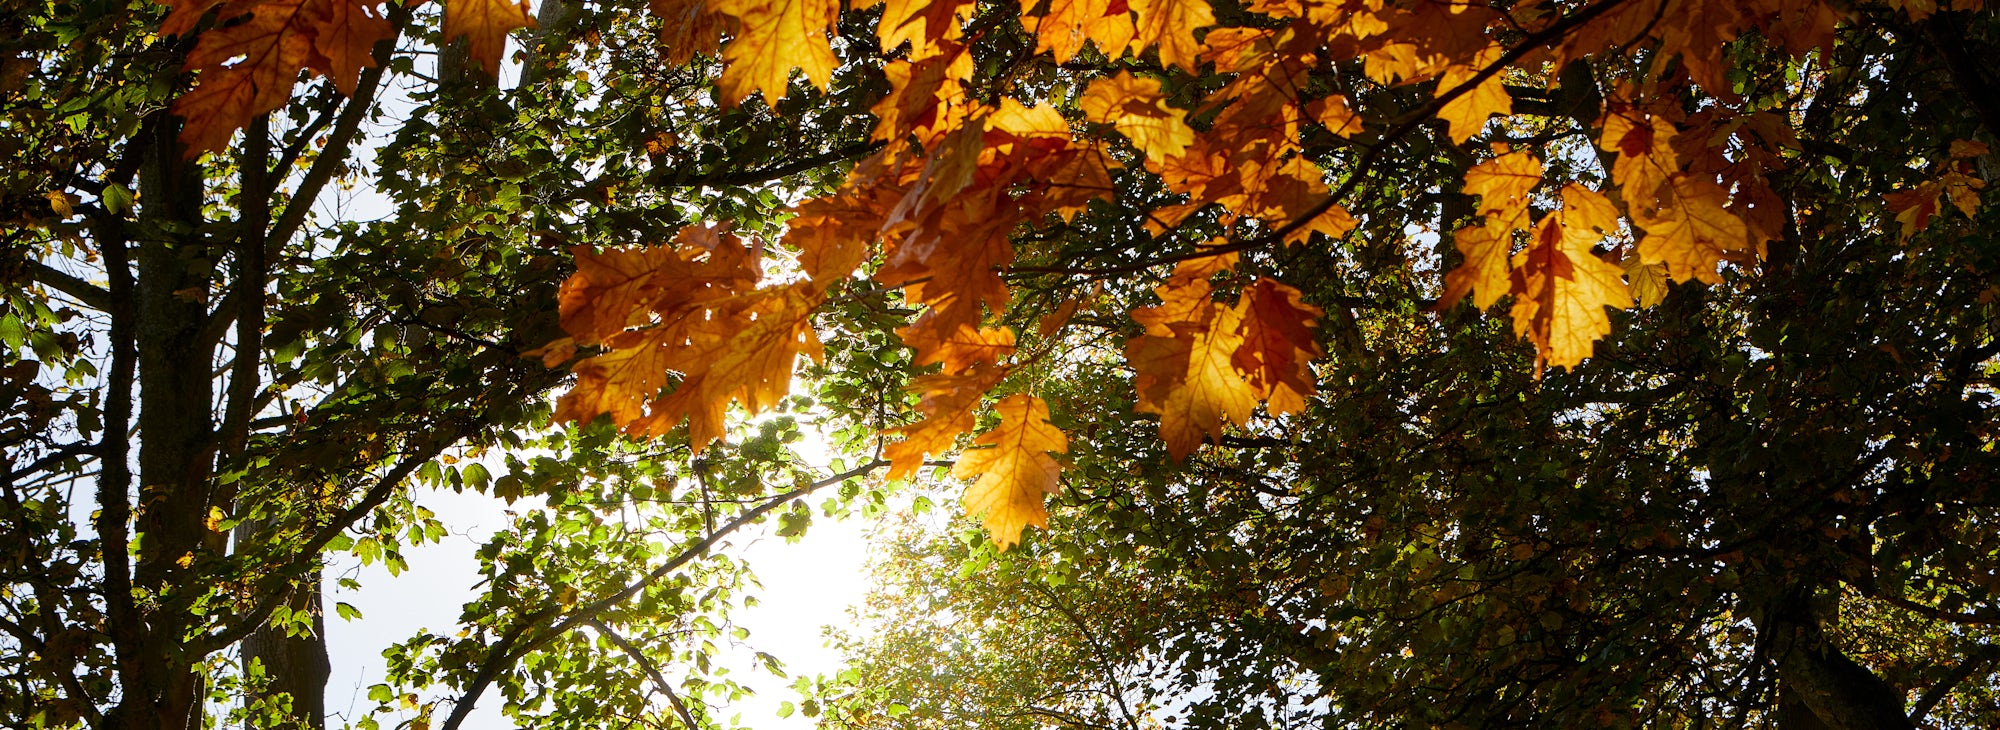 Autumn woodland foliage